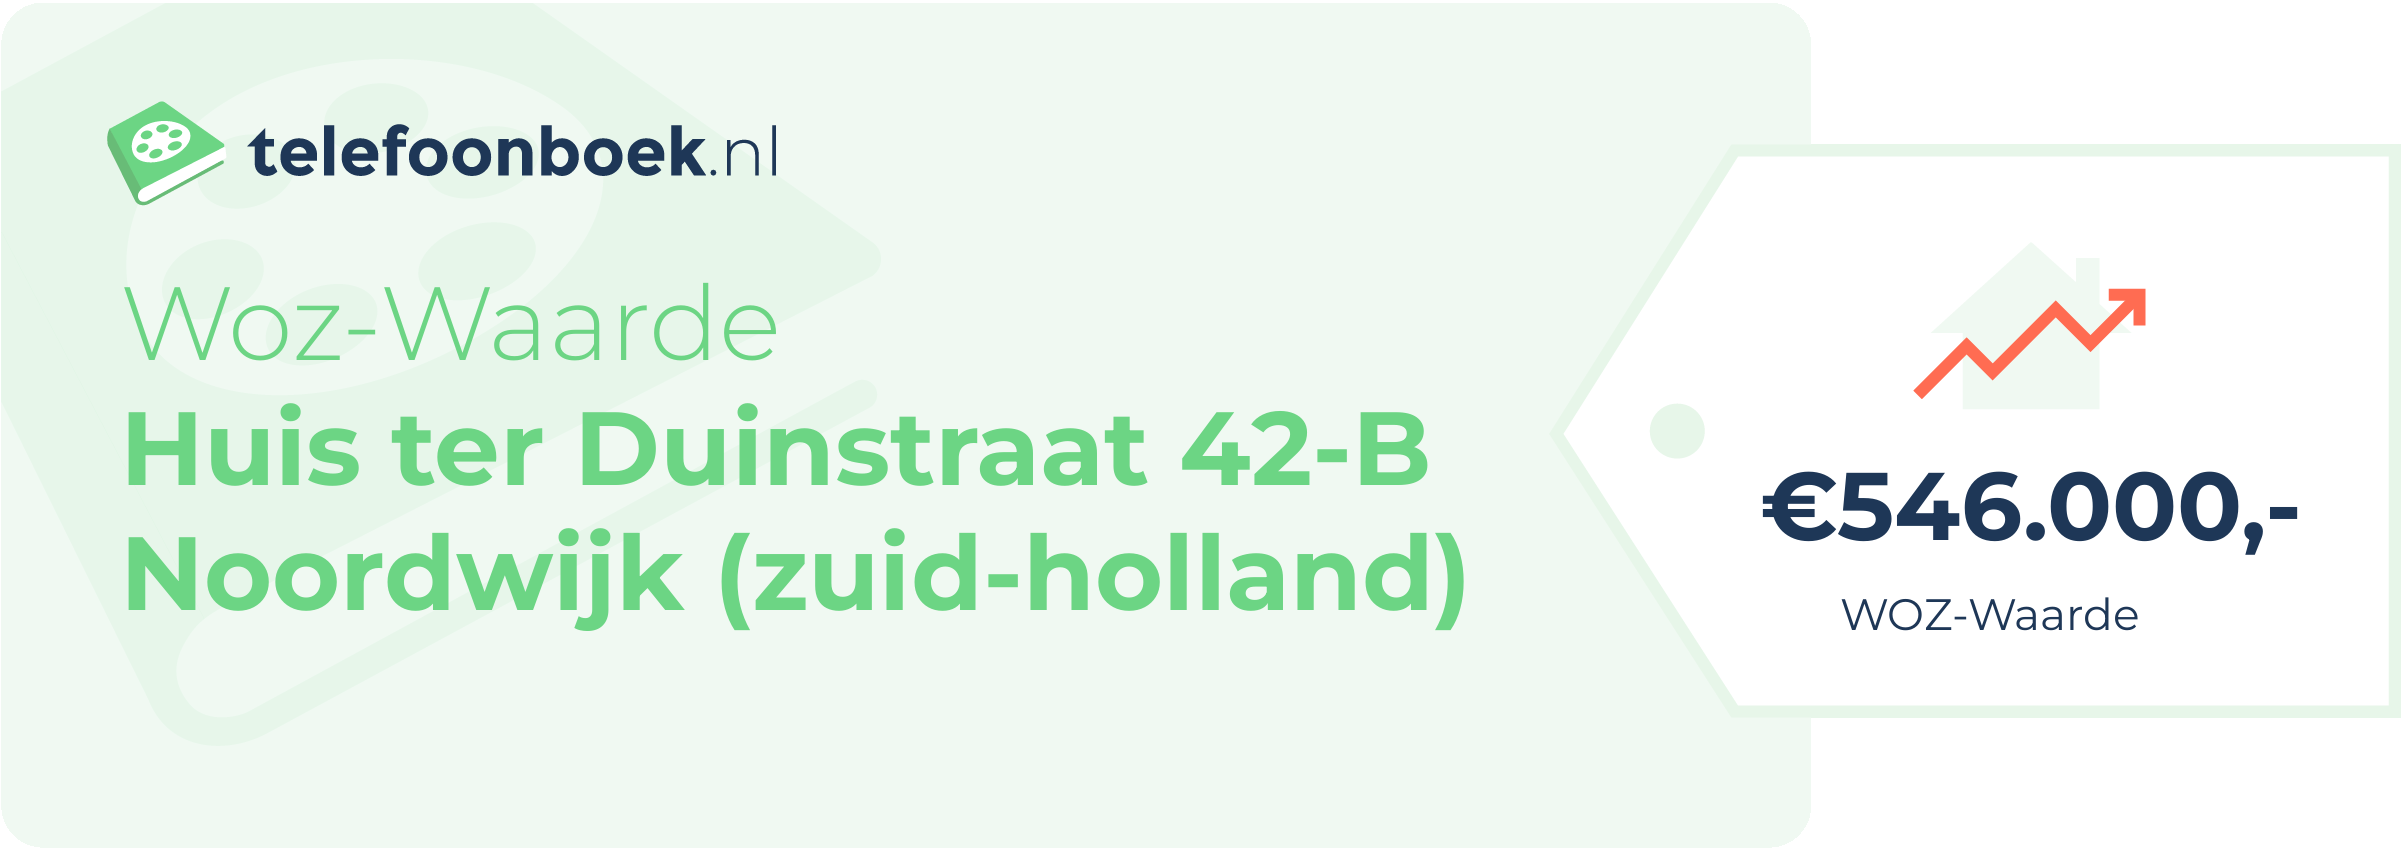 WOZ-waarde Huis Ter Duinstraat 42-B Noordwijk (Zuid-Holland)